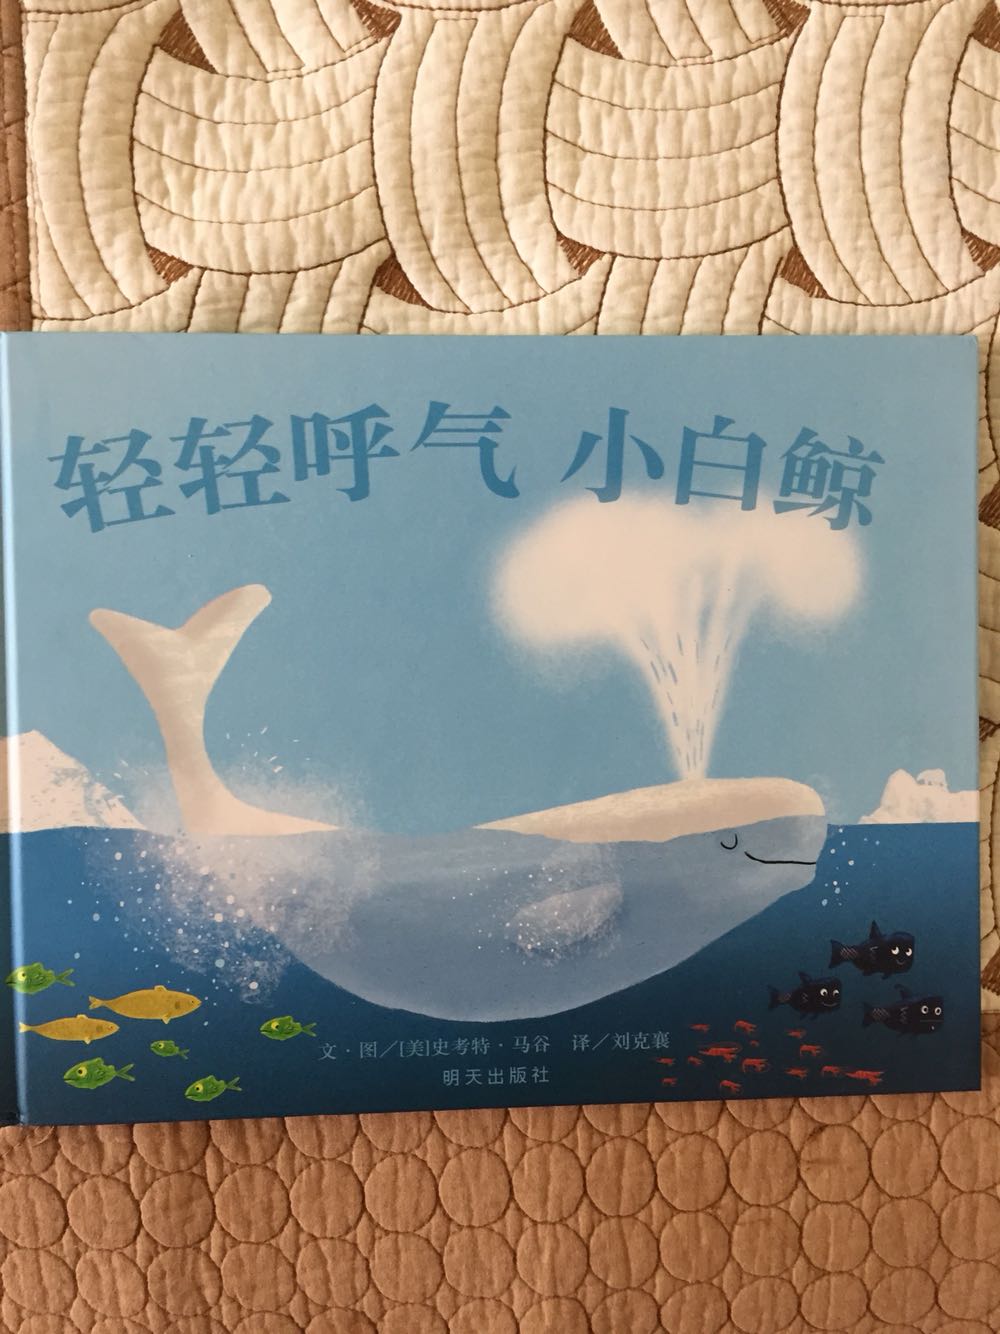 文字很简单 画面很好看 孩子喜欢鱼喜欢海很喜欢这本书 买书划算送货快